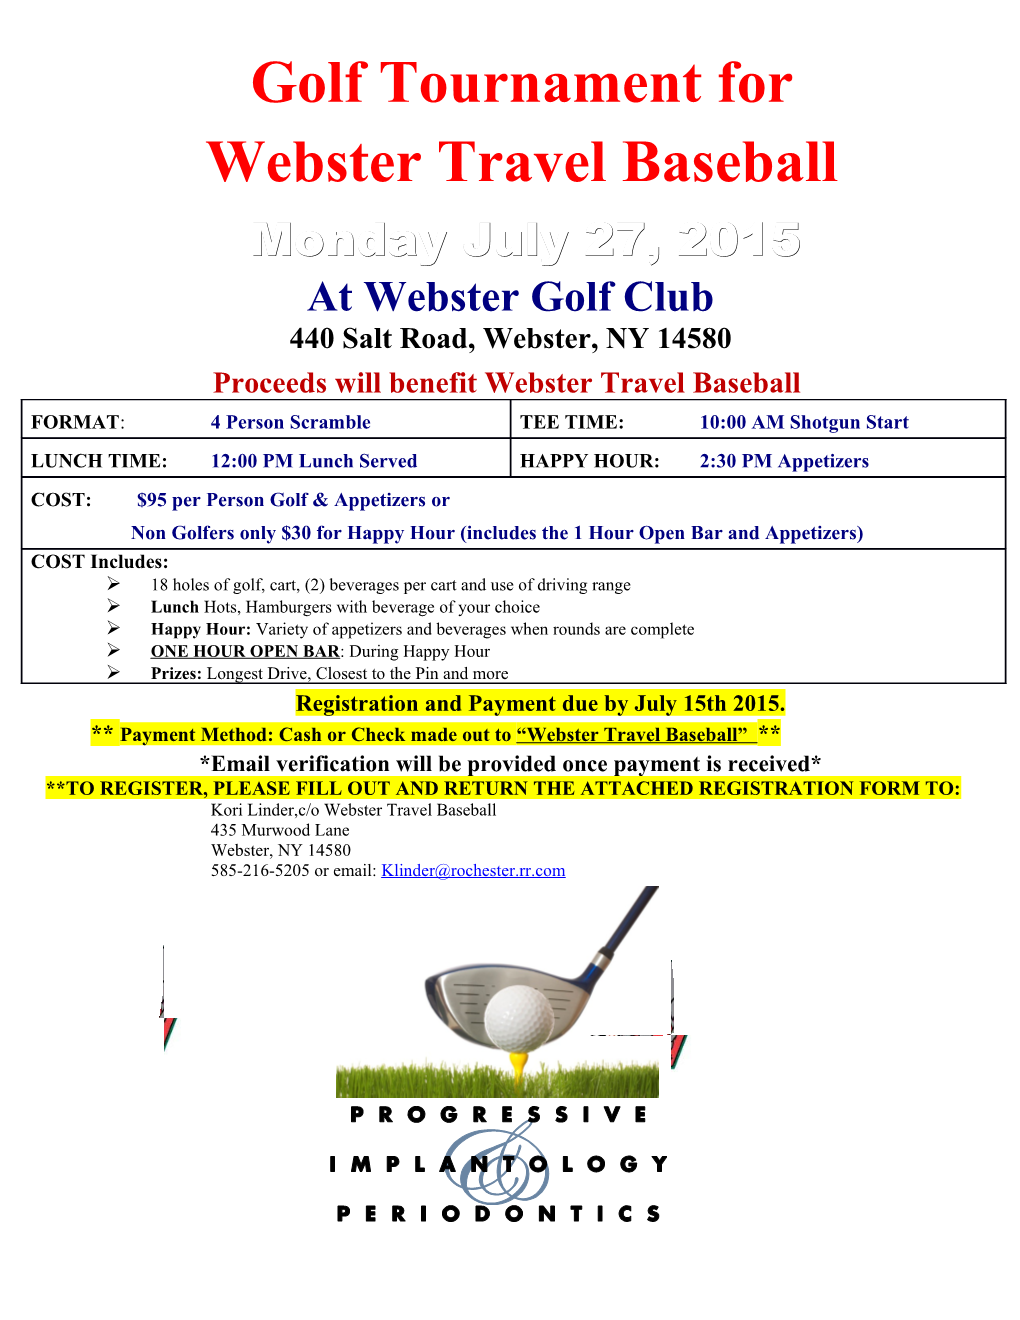 Golf Tournament for Webster Travel Baseball